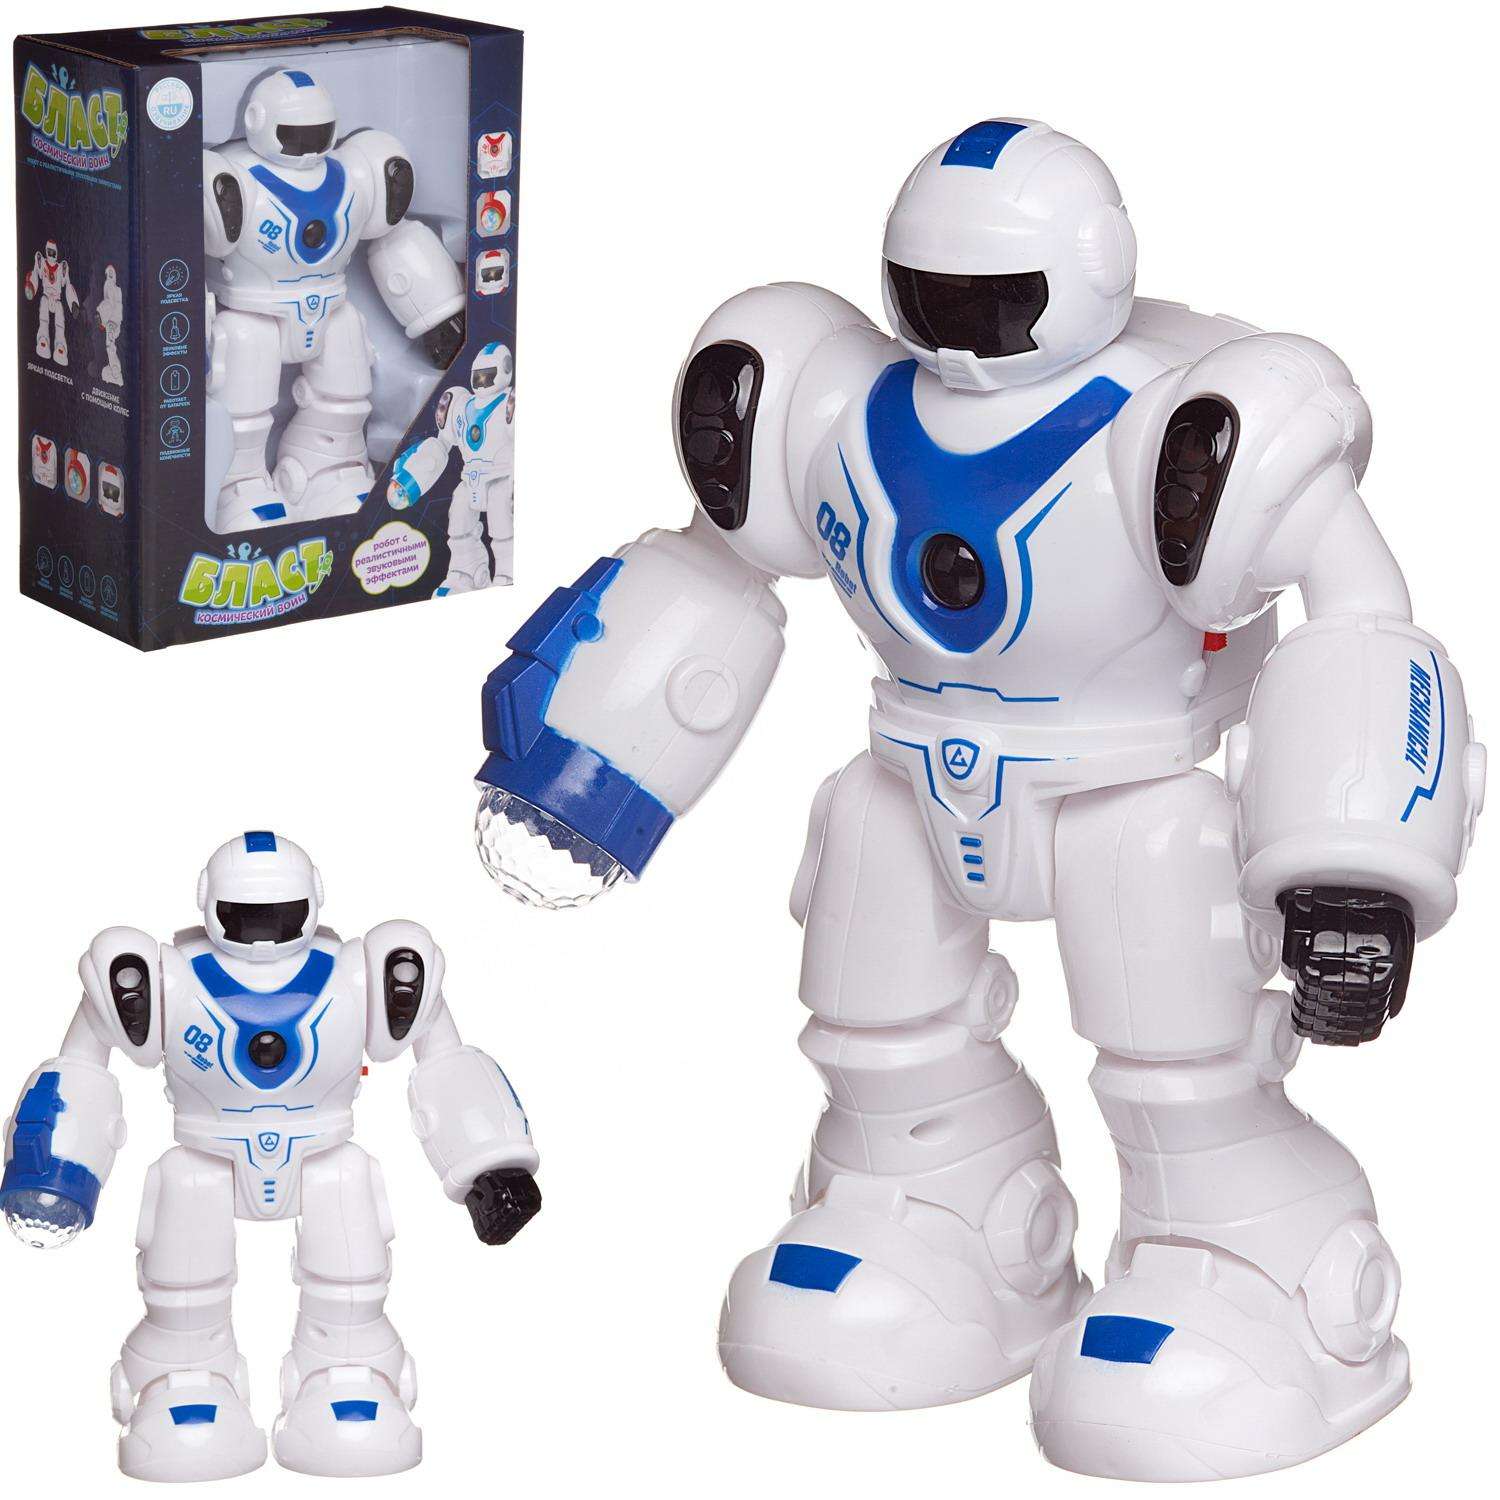 Робот Junfa Бласт Космический воин электромеханический свет звук белый с синим - фото 3